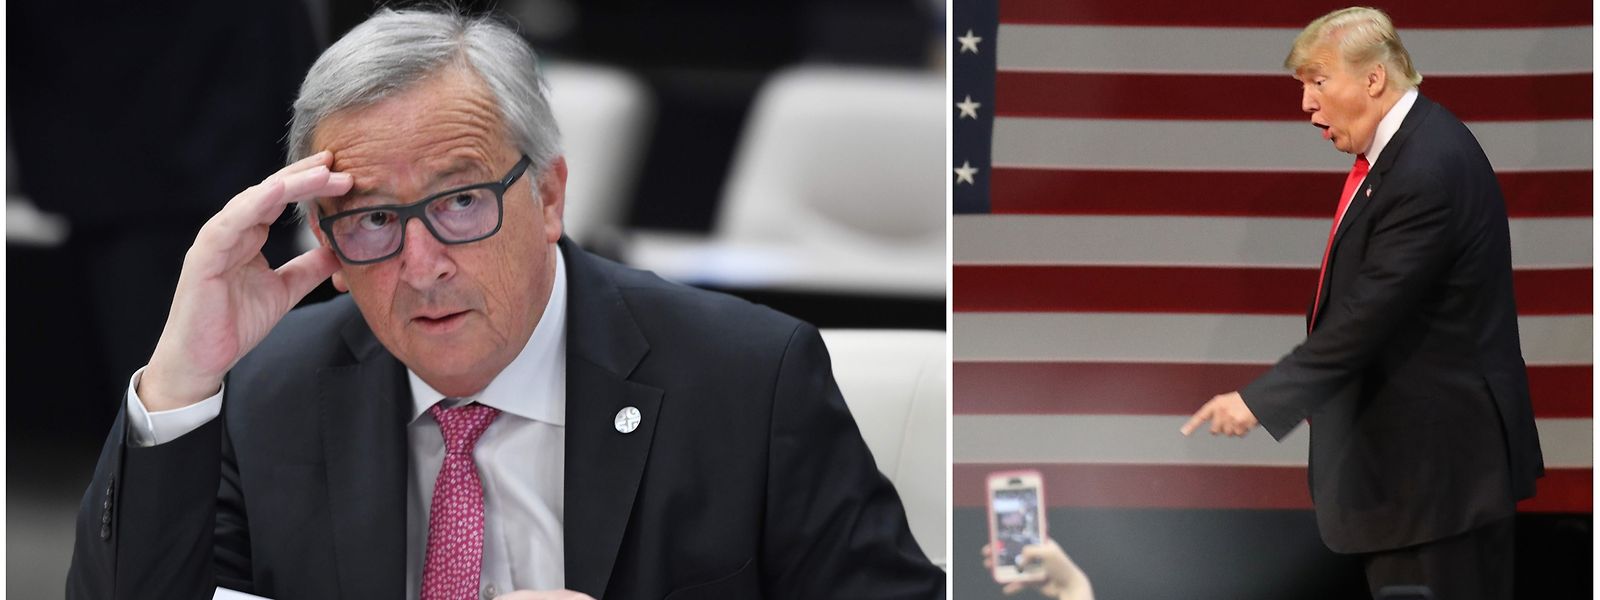 Nicht ganz einer Meinung: EU-Kommissionspräsident Jean-Claude Juncker (l.) und Donald Trump.